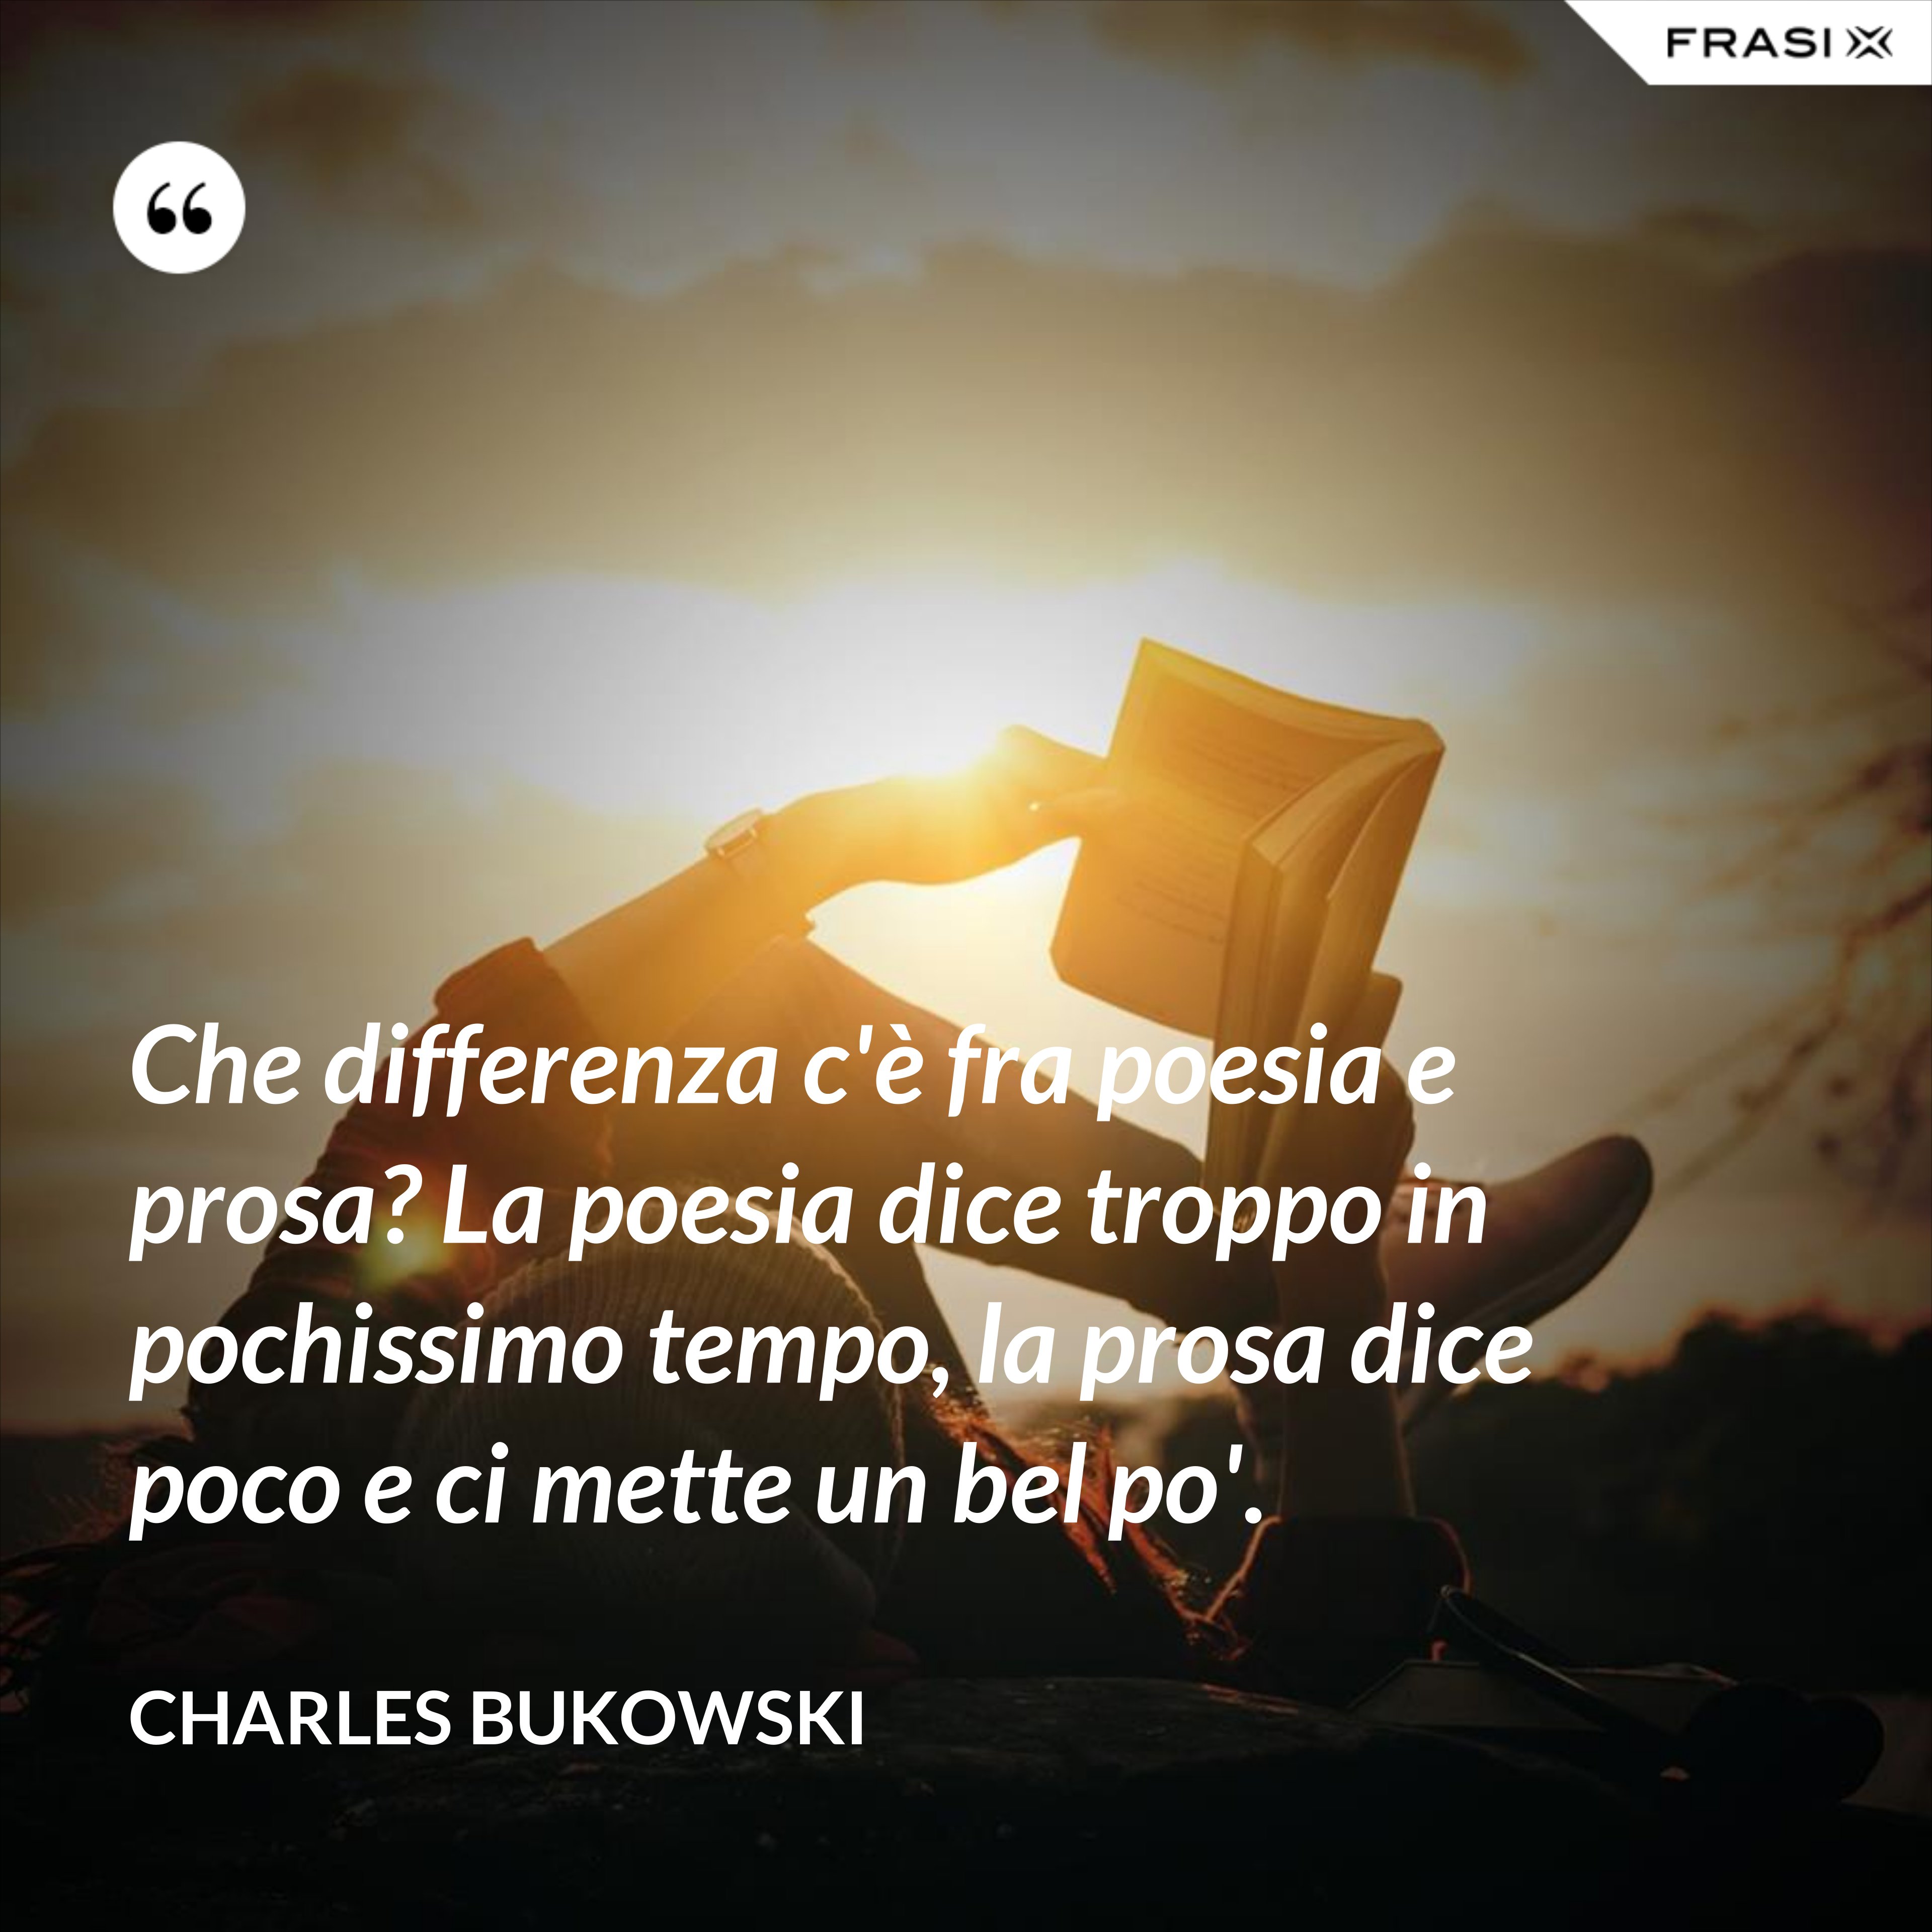 Che differenza c'è fra poesia e prosa? La poesia dice troppo in pochissimo tempo, la prosa dice poco e ci mette un bel po'. - Charles Bukowski